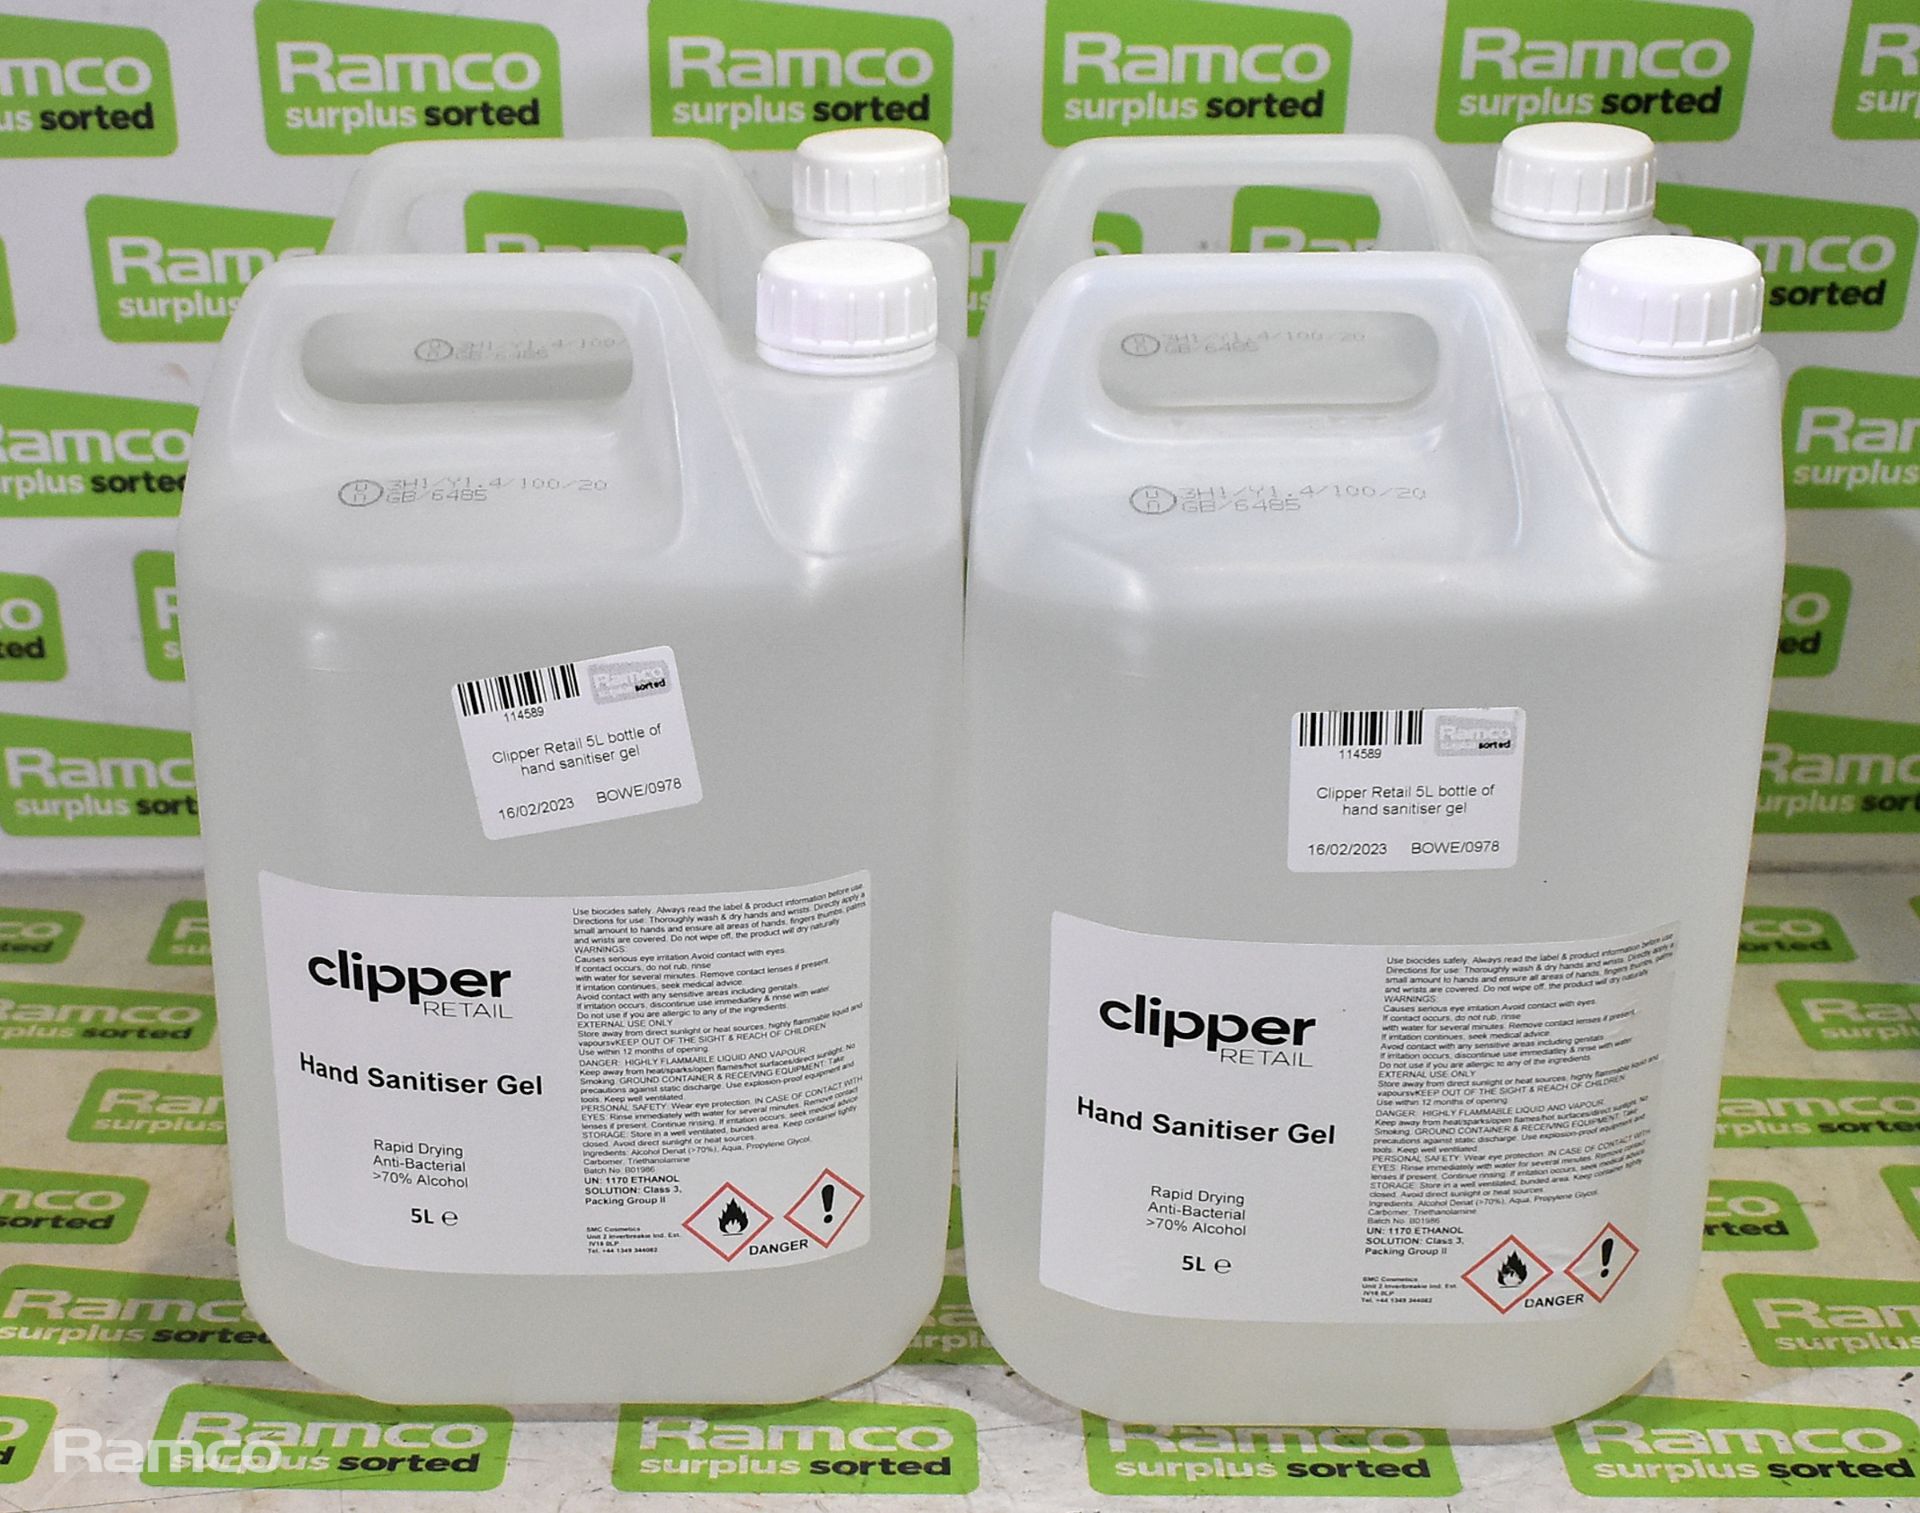 4x Clipper Retail 5L bottles of hand sanitiser gel - Image 2 of 3